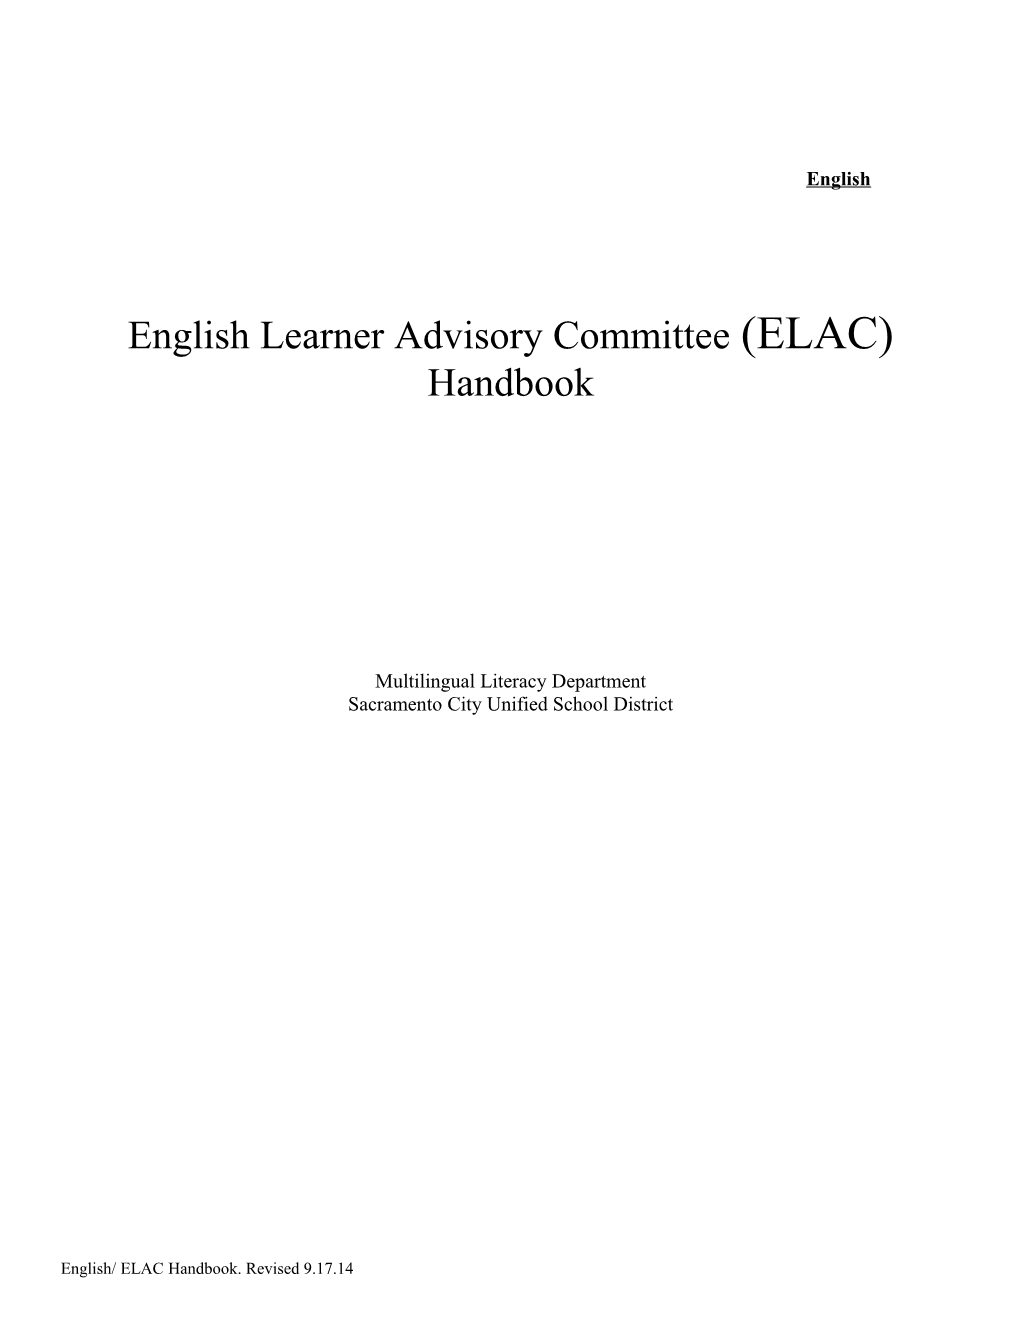 Englishlearneradvisorycommittee(ELAC)